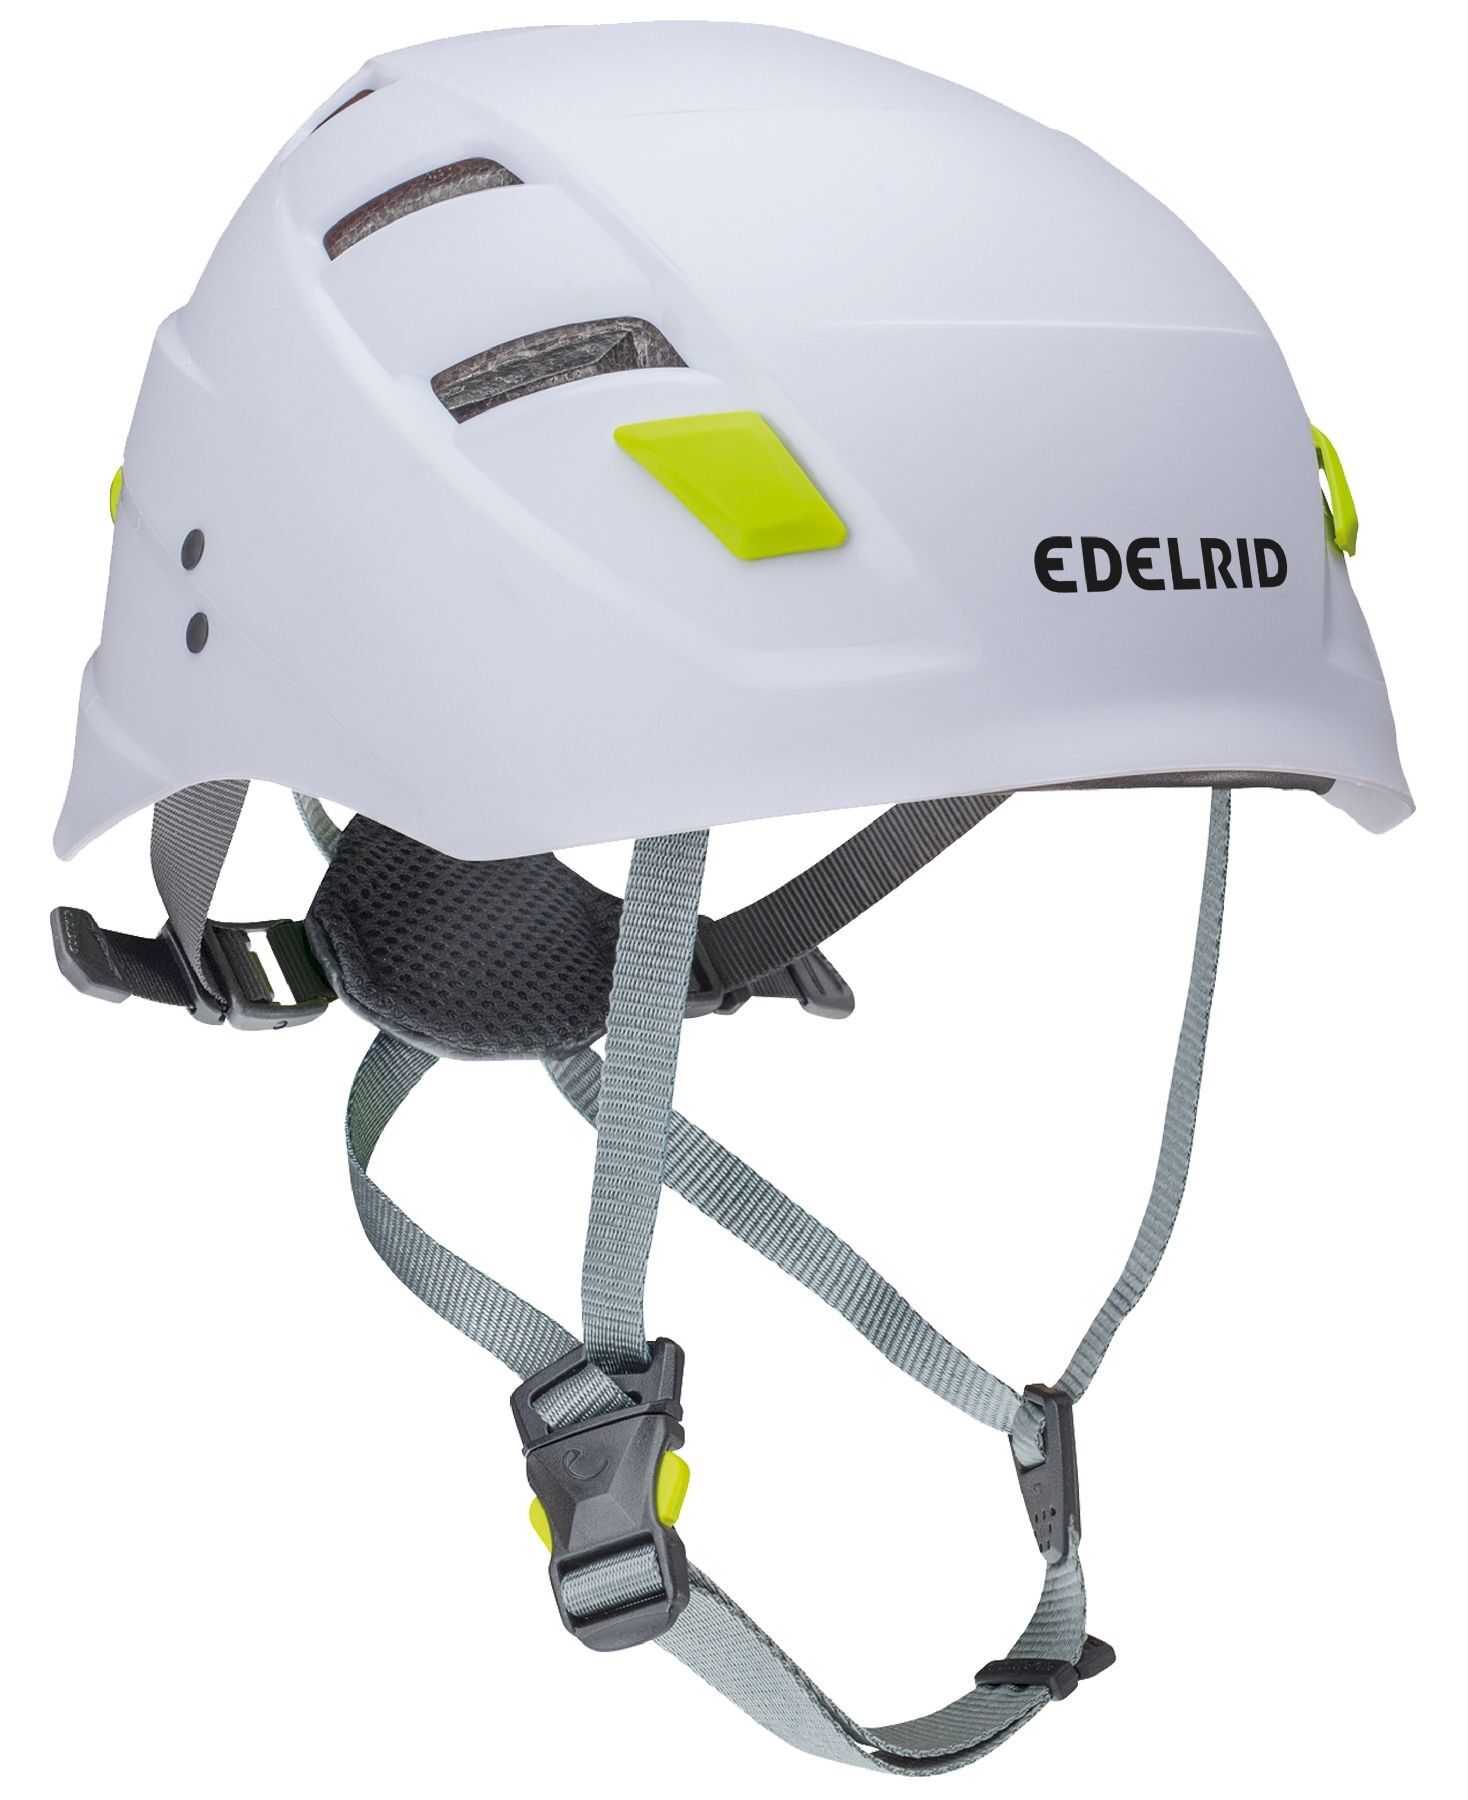 Edelrid - Zodiac, casco de escalada